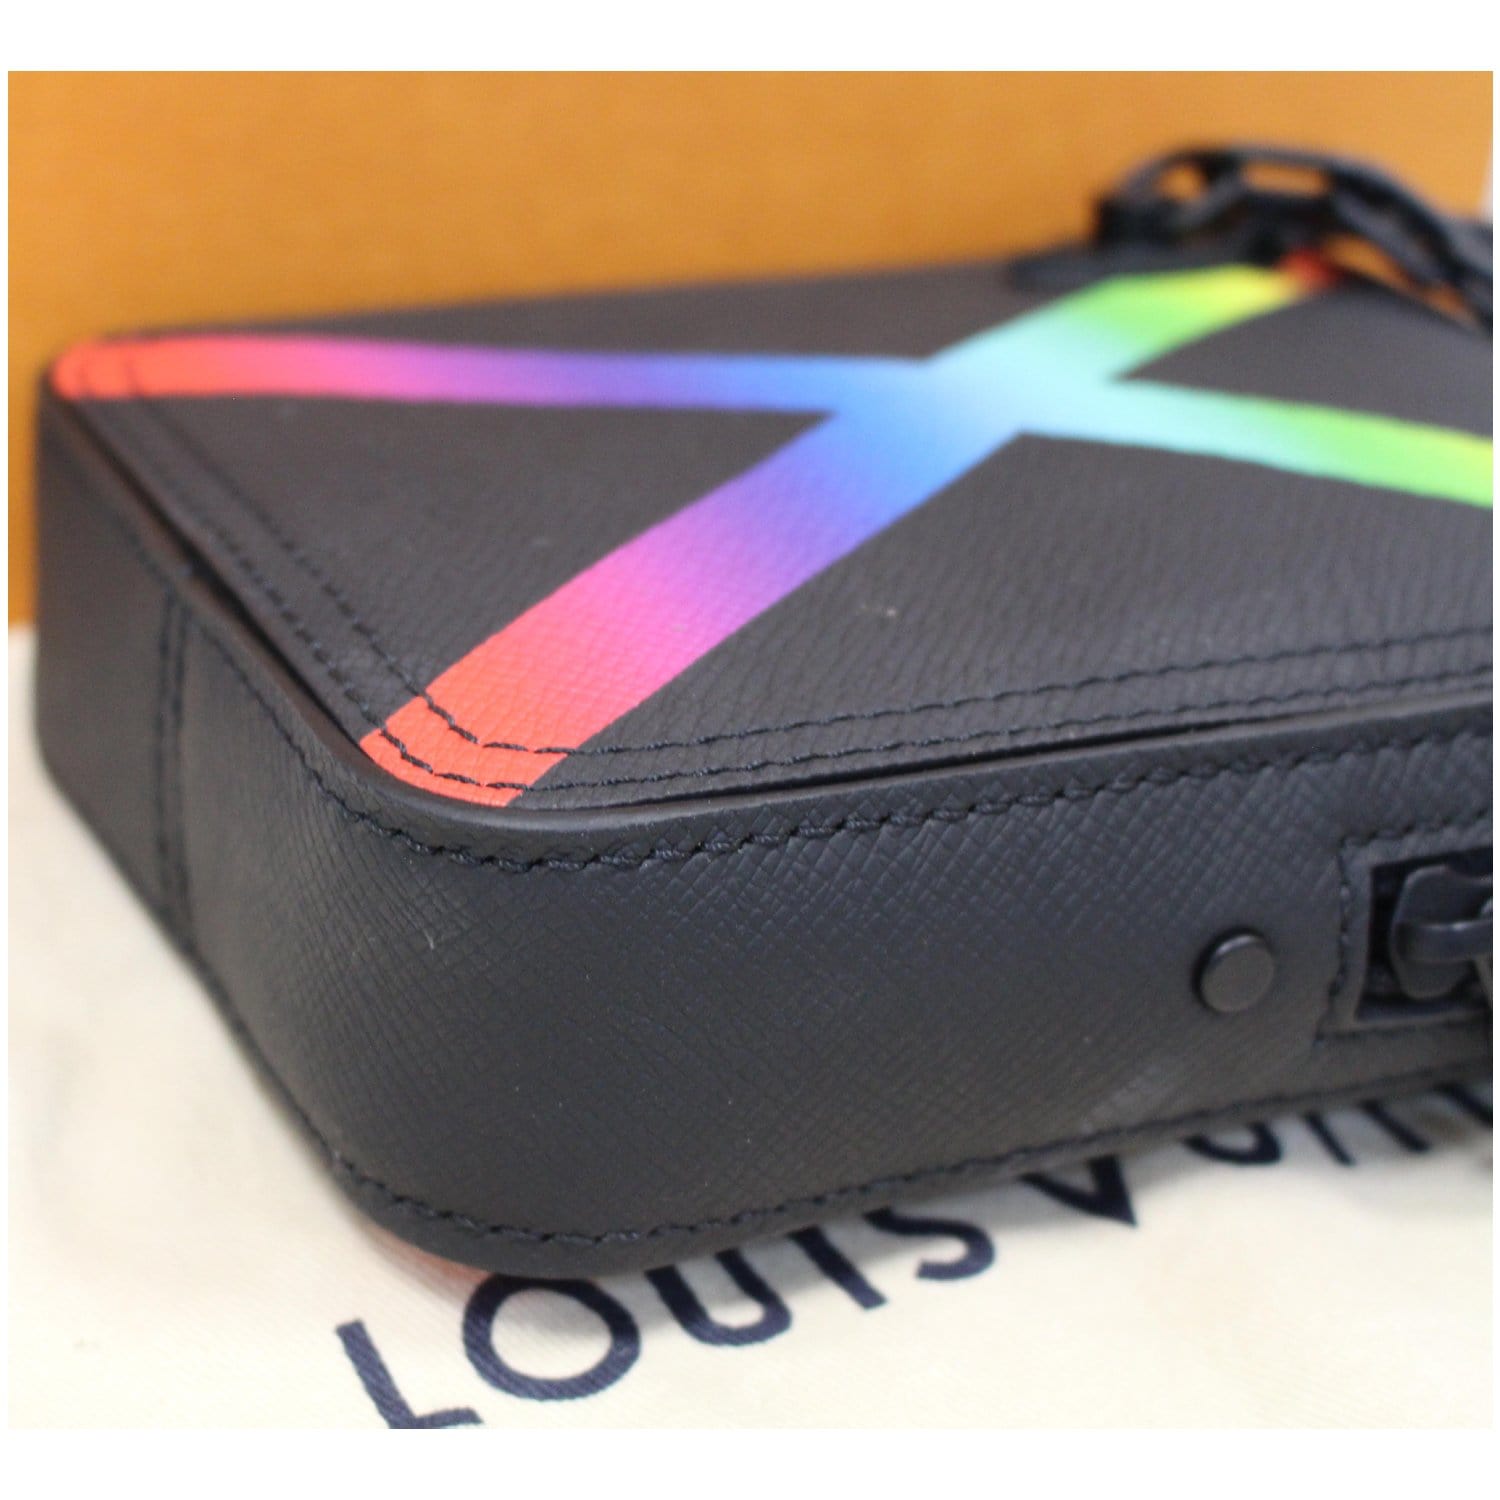 Sac bandoulière Louis Vuitton Danube Rainbow Messenger bag en cuir taiga  noir